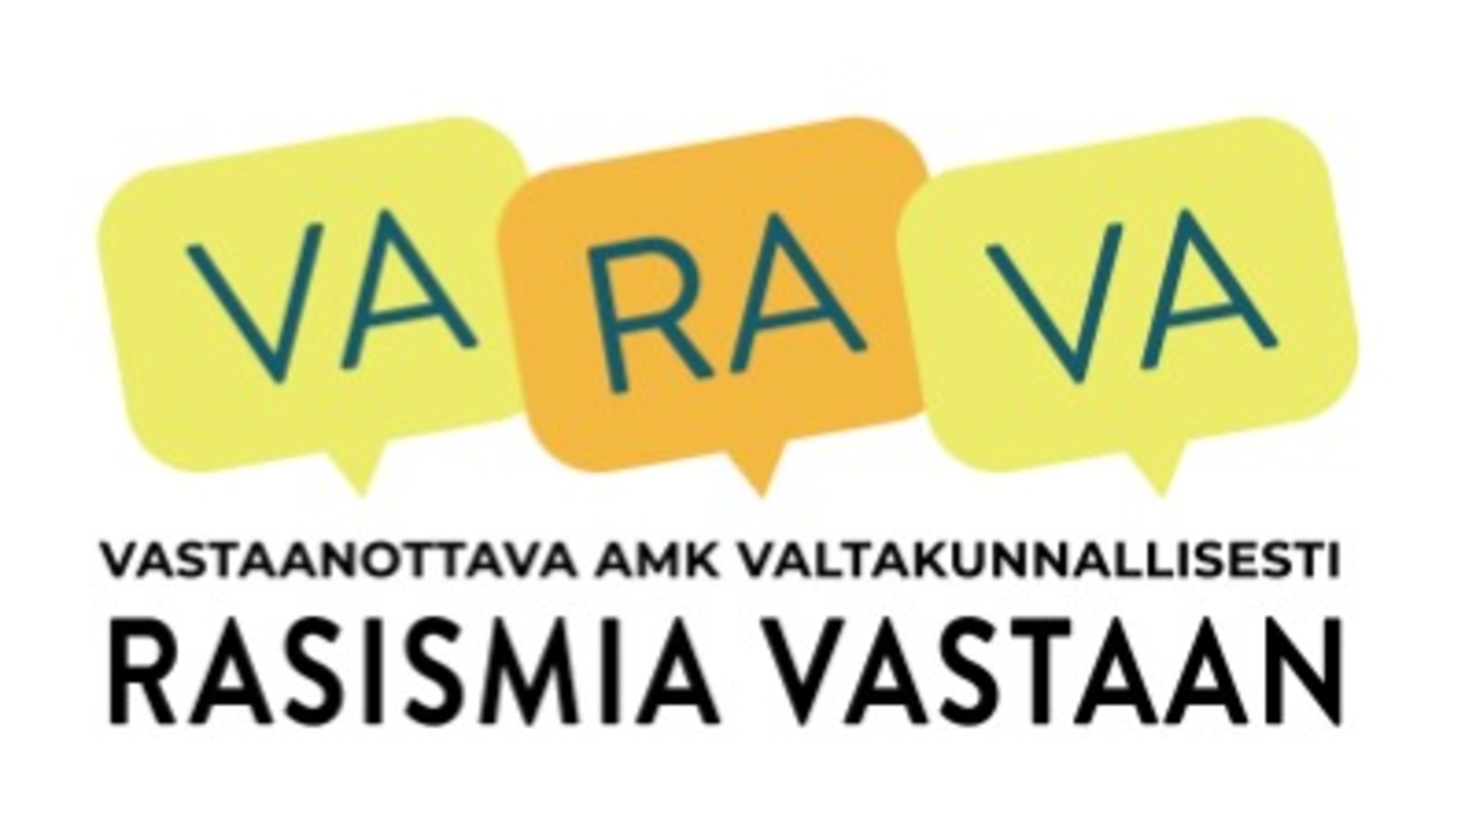 VARAVA logo